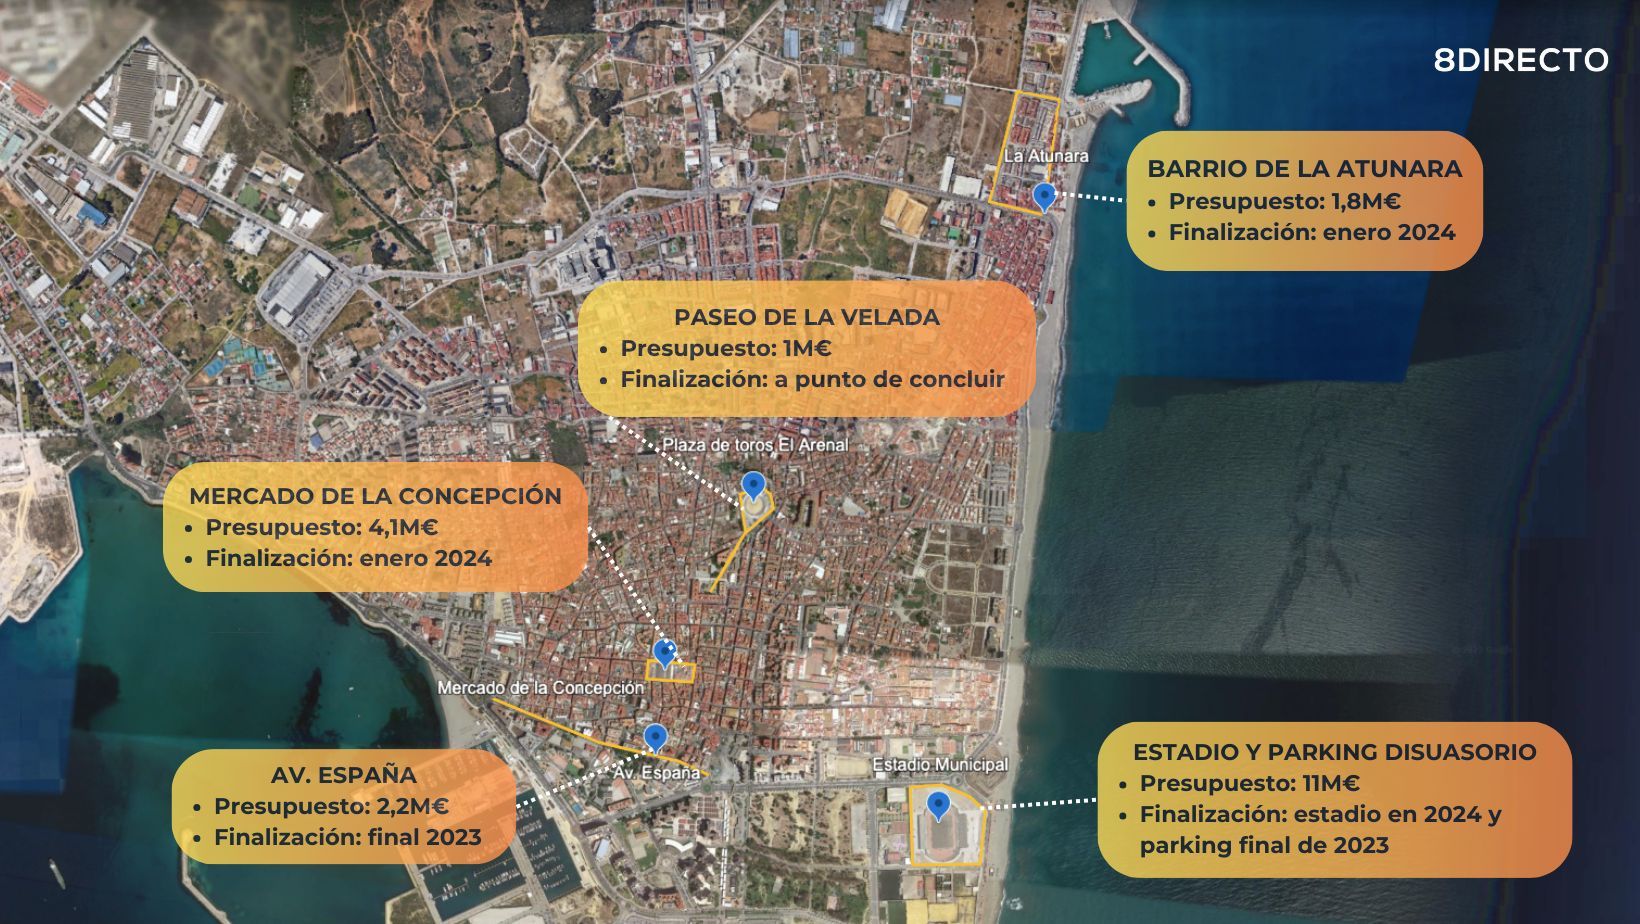 La nueva Línea: 20 millones de euros para siete proyectos que ya transforman esta ciudad. Infografía por Sofía Furse para 8Directo. 